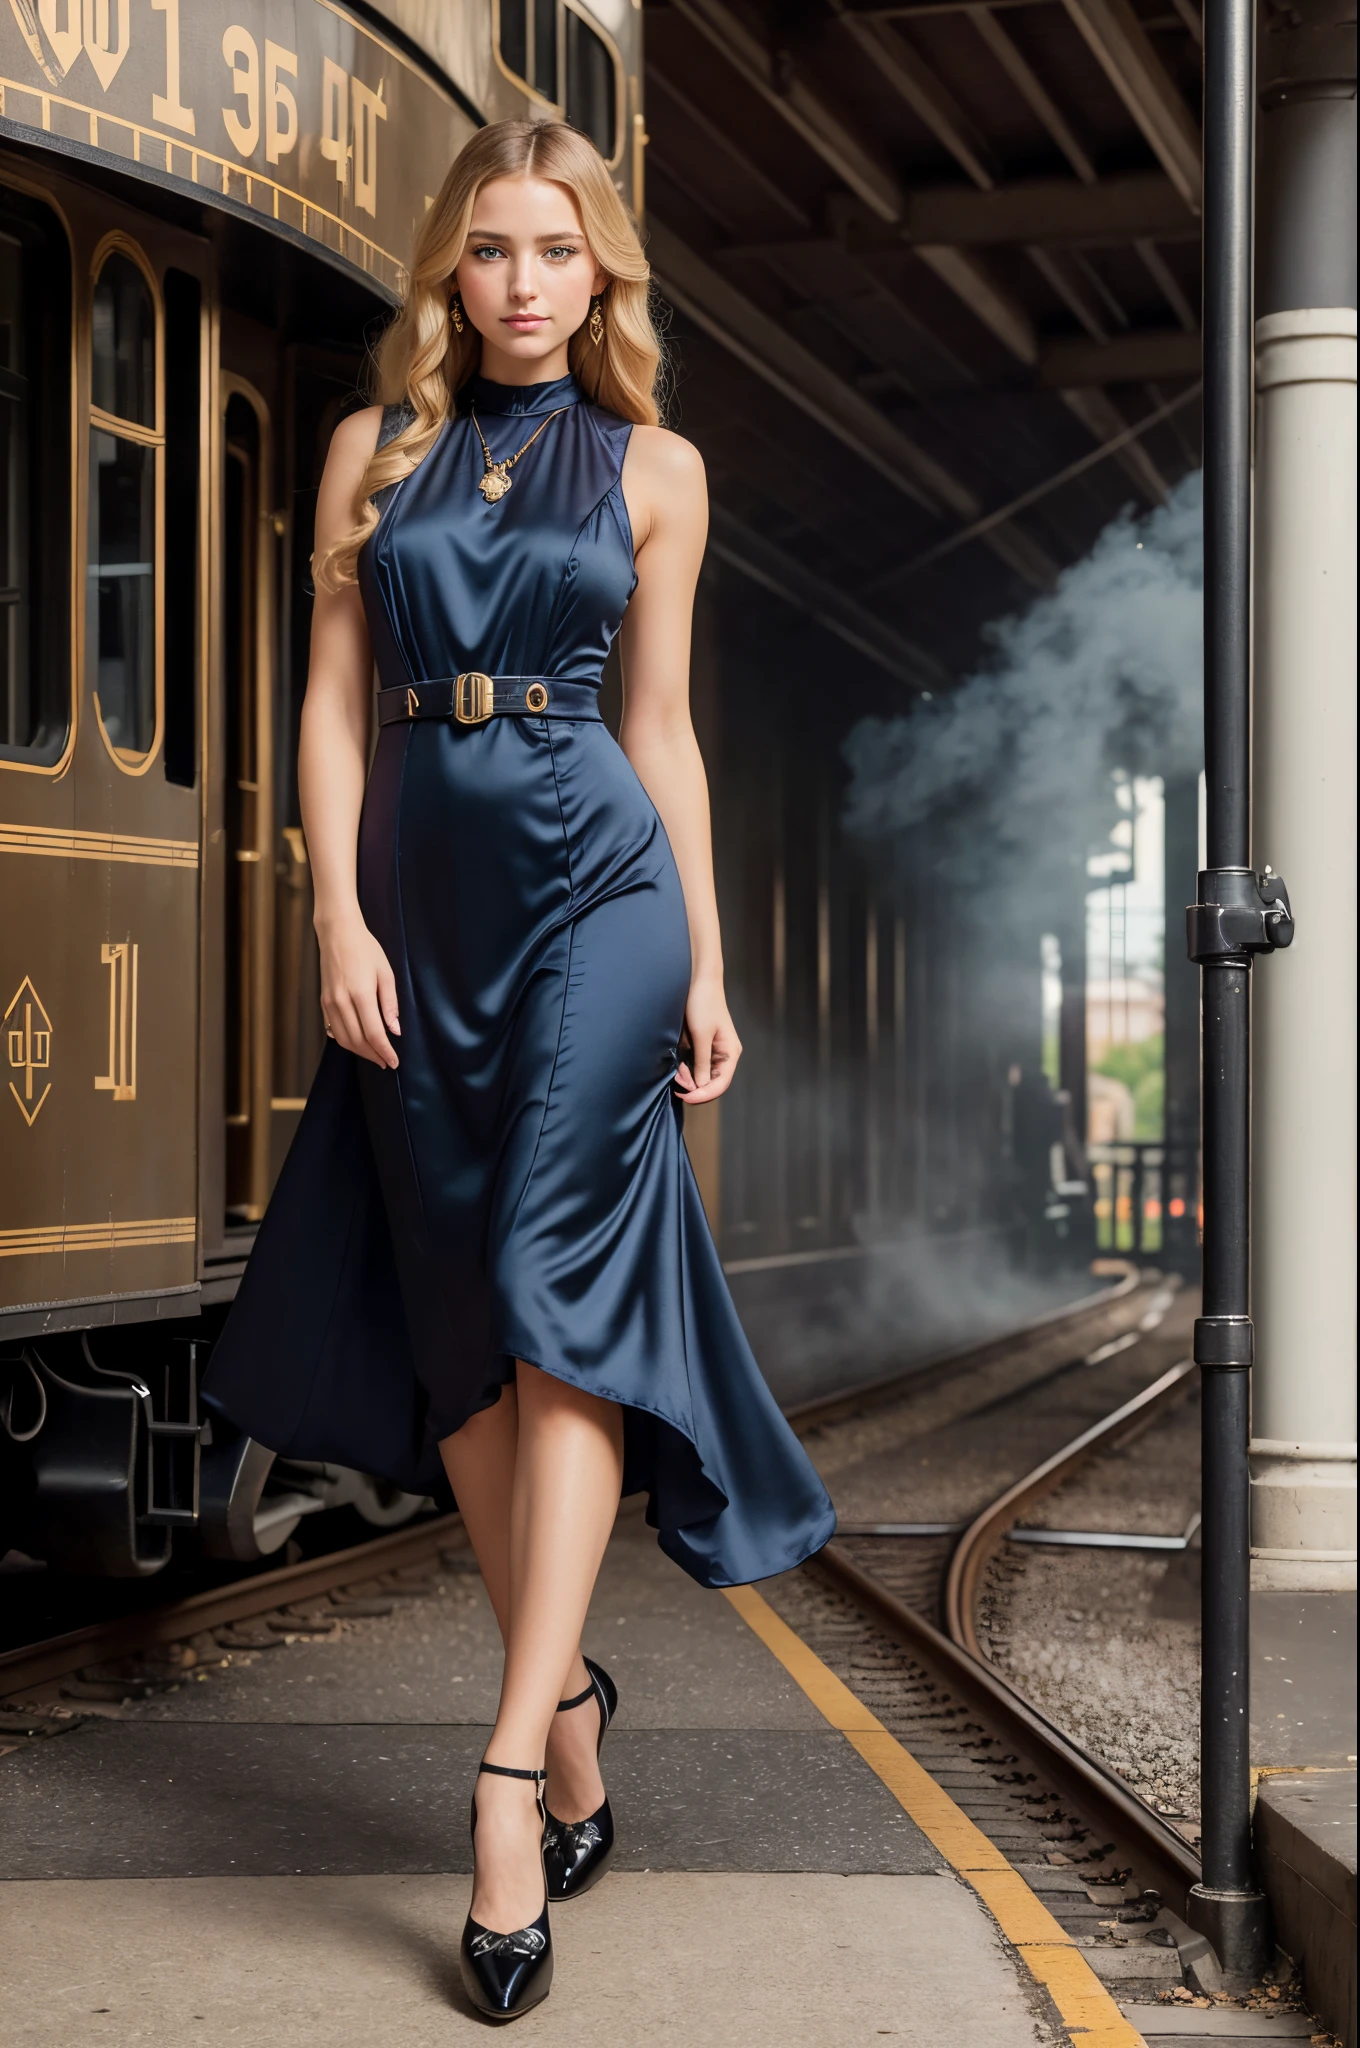 全身肖像, 一位 28 岁的美丽女性, 常设 (((户外))) 在 19 世纪的火车站台上, 一辆巨大的黑色蒸汽机车, 机车喷出蒸汽, 她身后是 1910 年的铁路建筑, 她有一头金色的长发, 蓝眼睛, 清白的, 一位美丽的金发女郎, 羞涩的表情, ((睁开眼睛)), (((穿着装饰艺术风格的连衣裙))), ((疏水泵鞋)), 丝袜, 屡获殊荣的魅力摄影,((最好的质量)), (((杰作)), ((实际的)), 空灵的灯光, 超高分辨率.photo实际的:.1.4, (high 详细的 skin:1.2), 8K 超高清, 数码单反相机, 高质量, 胶片颗粒, 富士 XT3,(杰作) (最好的质量) (详细的) (电影灯光) (清晰聚焦) (错综复杂)